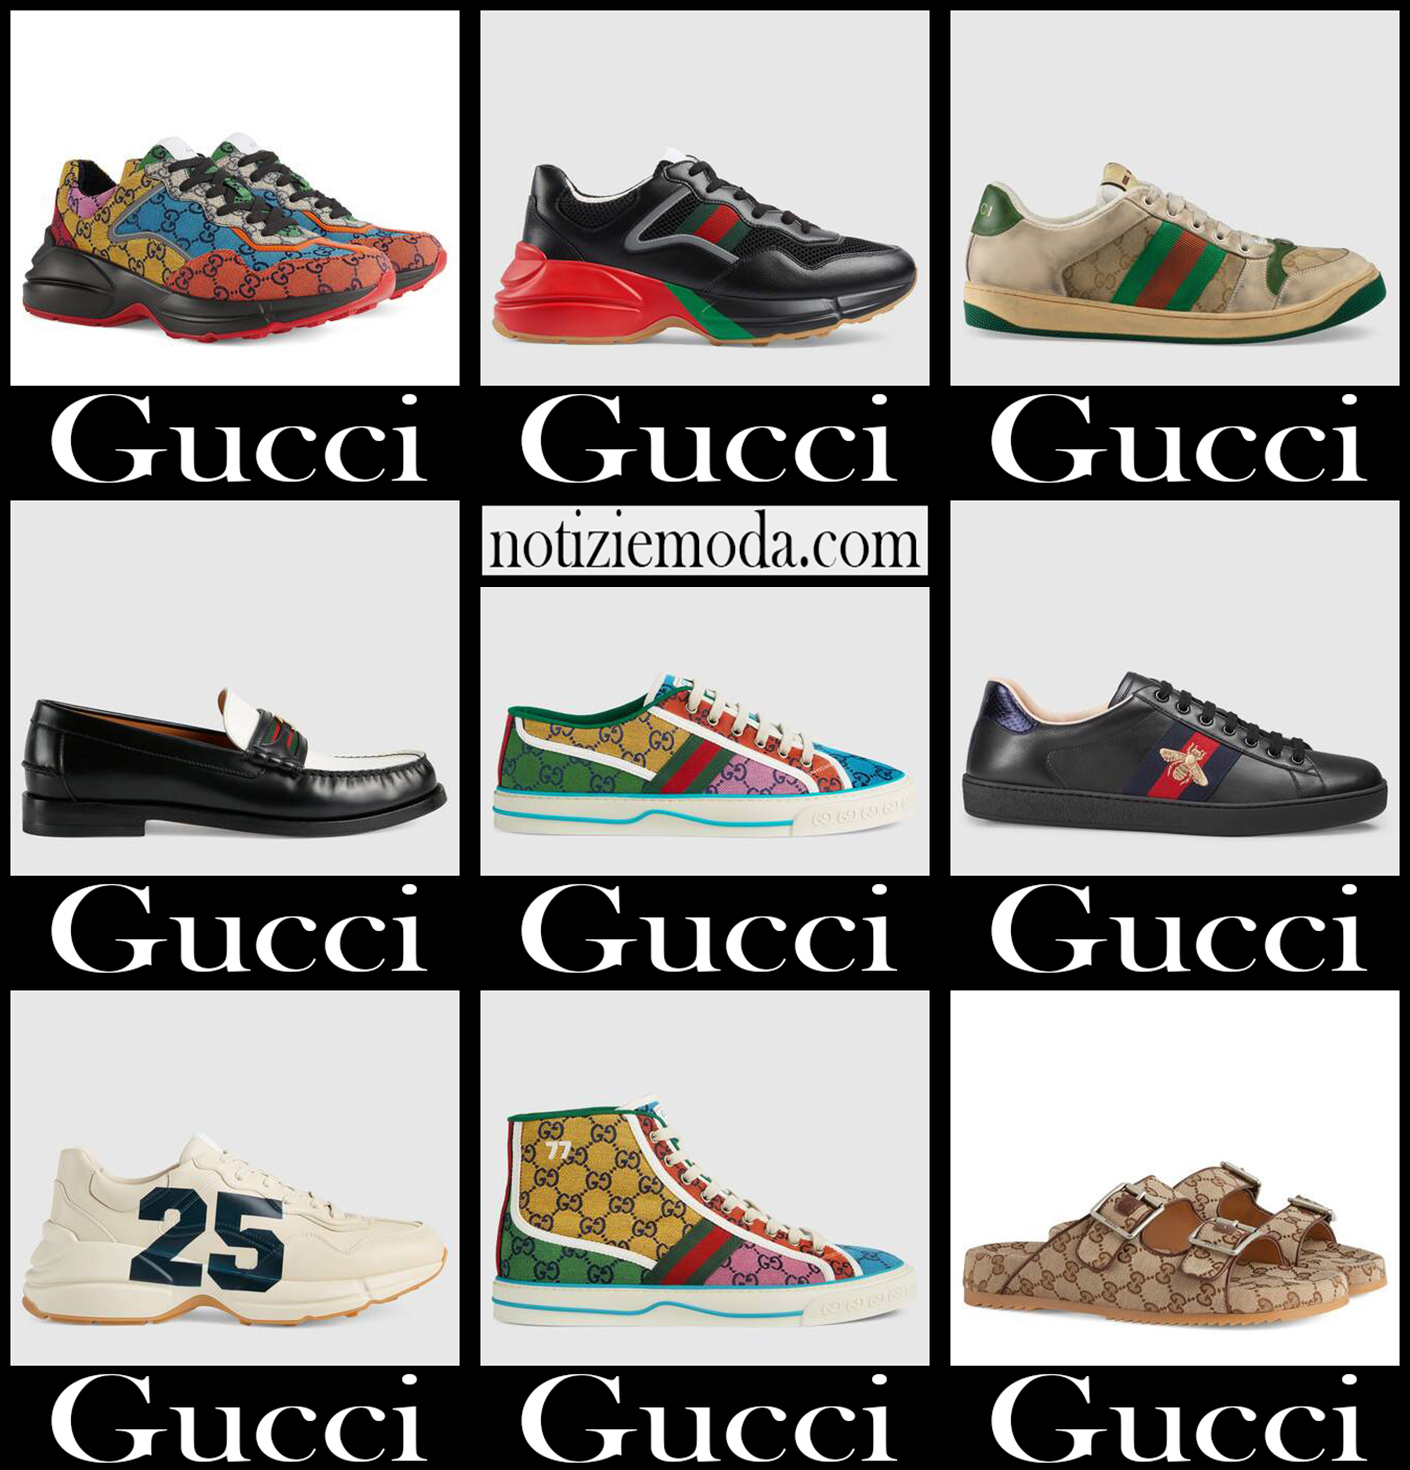 Scarpe Gucci nuovi arrivi calzature uomo accessori